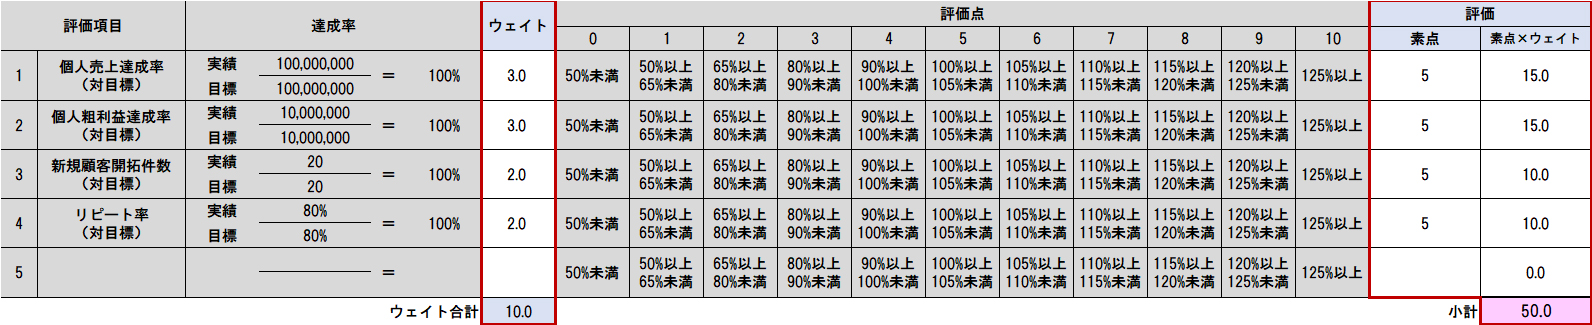 評価シートにおける成果・業績評価のウェイト設定と合計点のイメージ（赤枠部分）